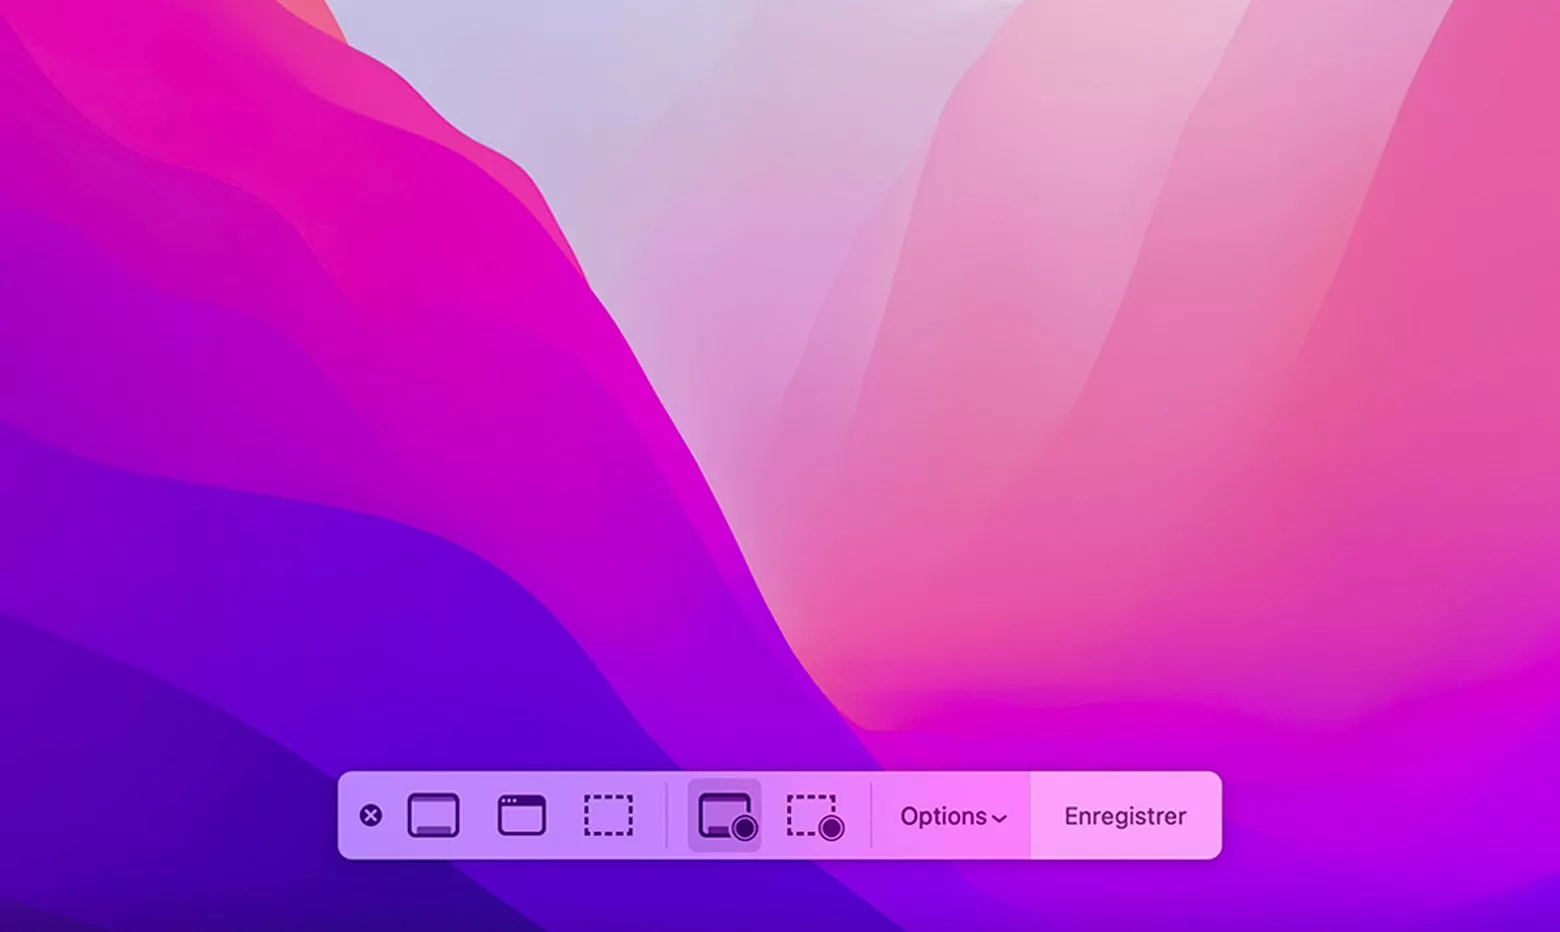 Interface utilisateur colorée avec boutons d’options.